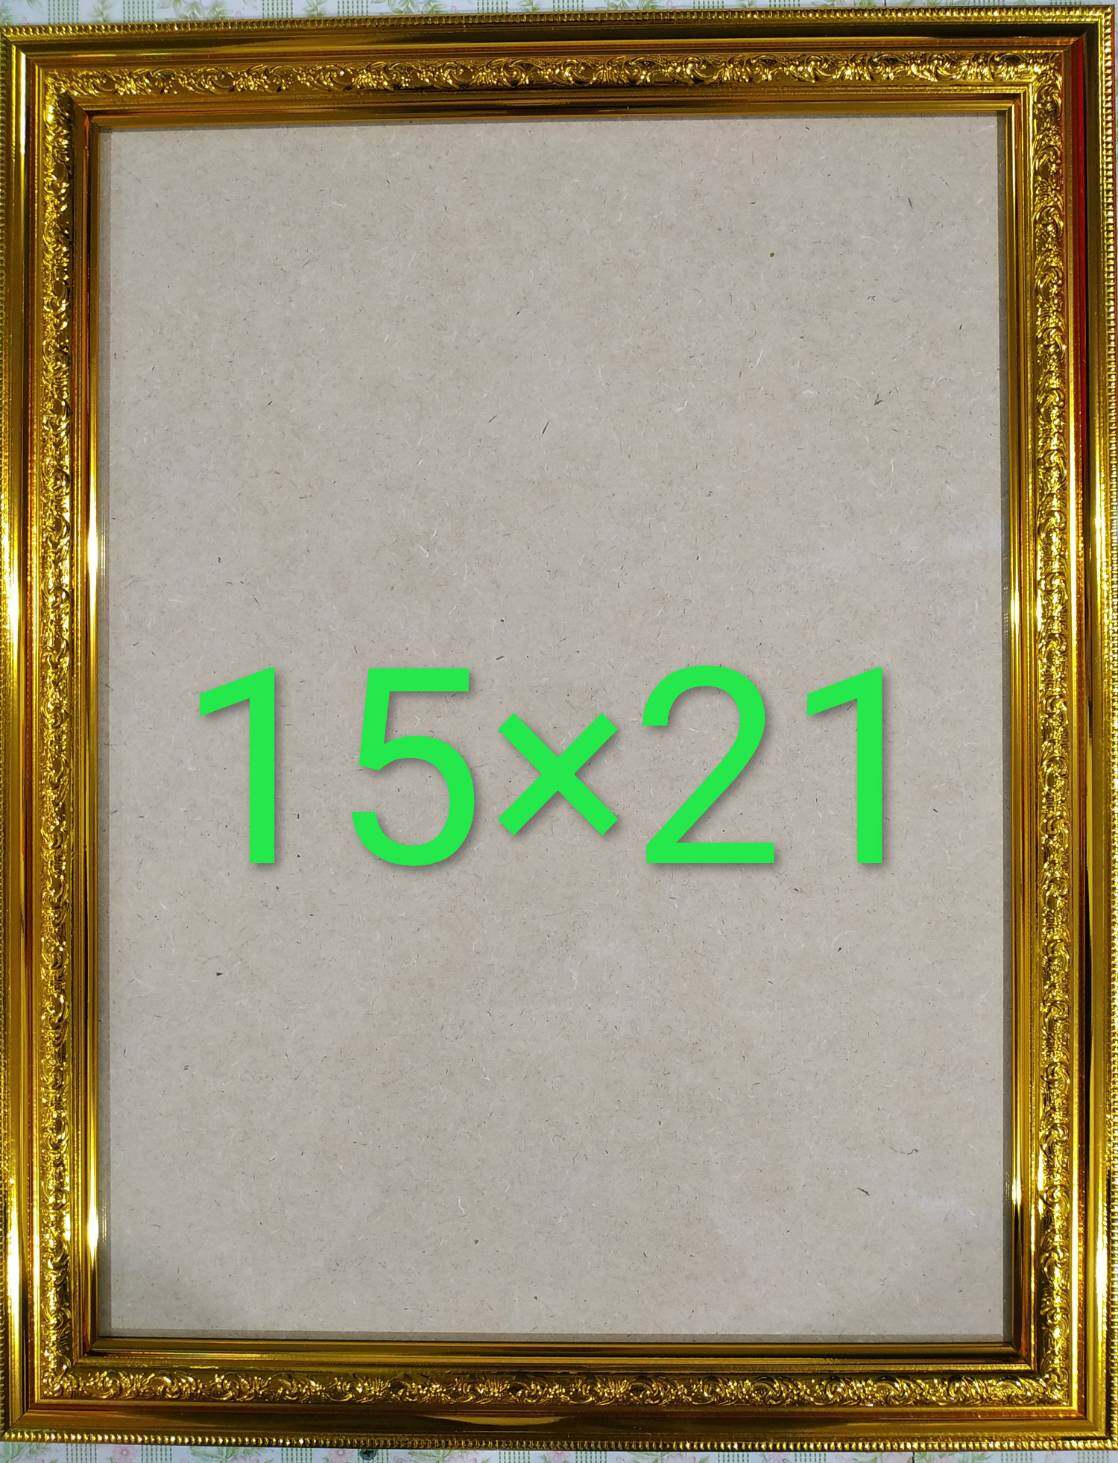 กรอบรูปใส่ภาพสีทอง สำหรับใส่ภาพขนาด15x21นื้ว